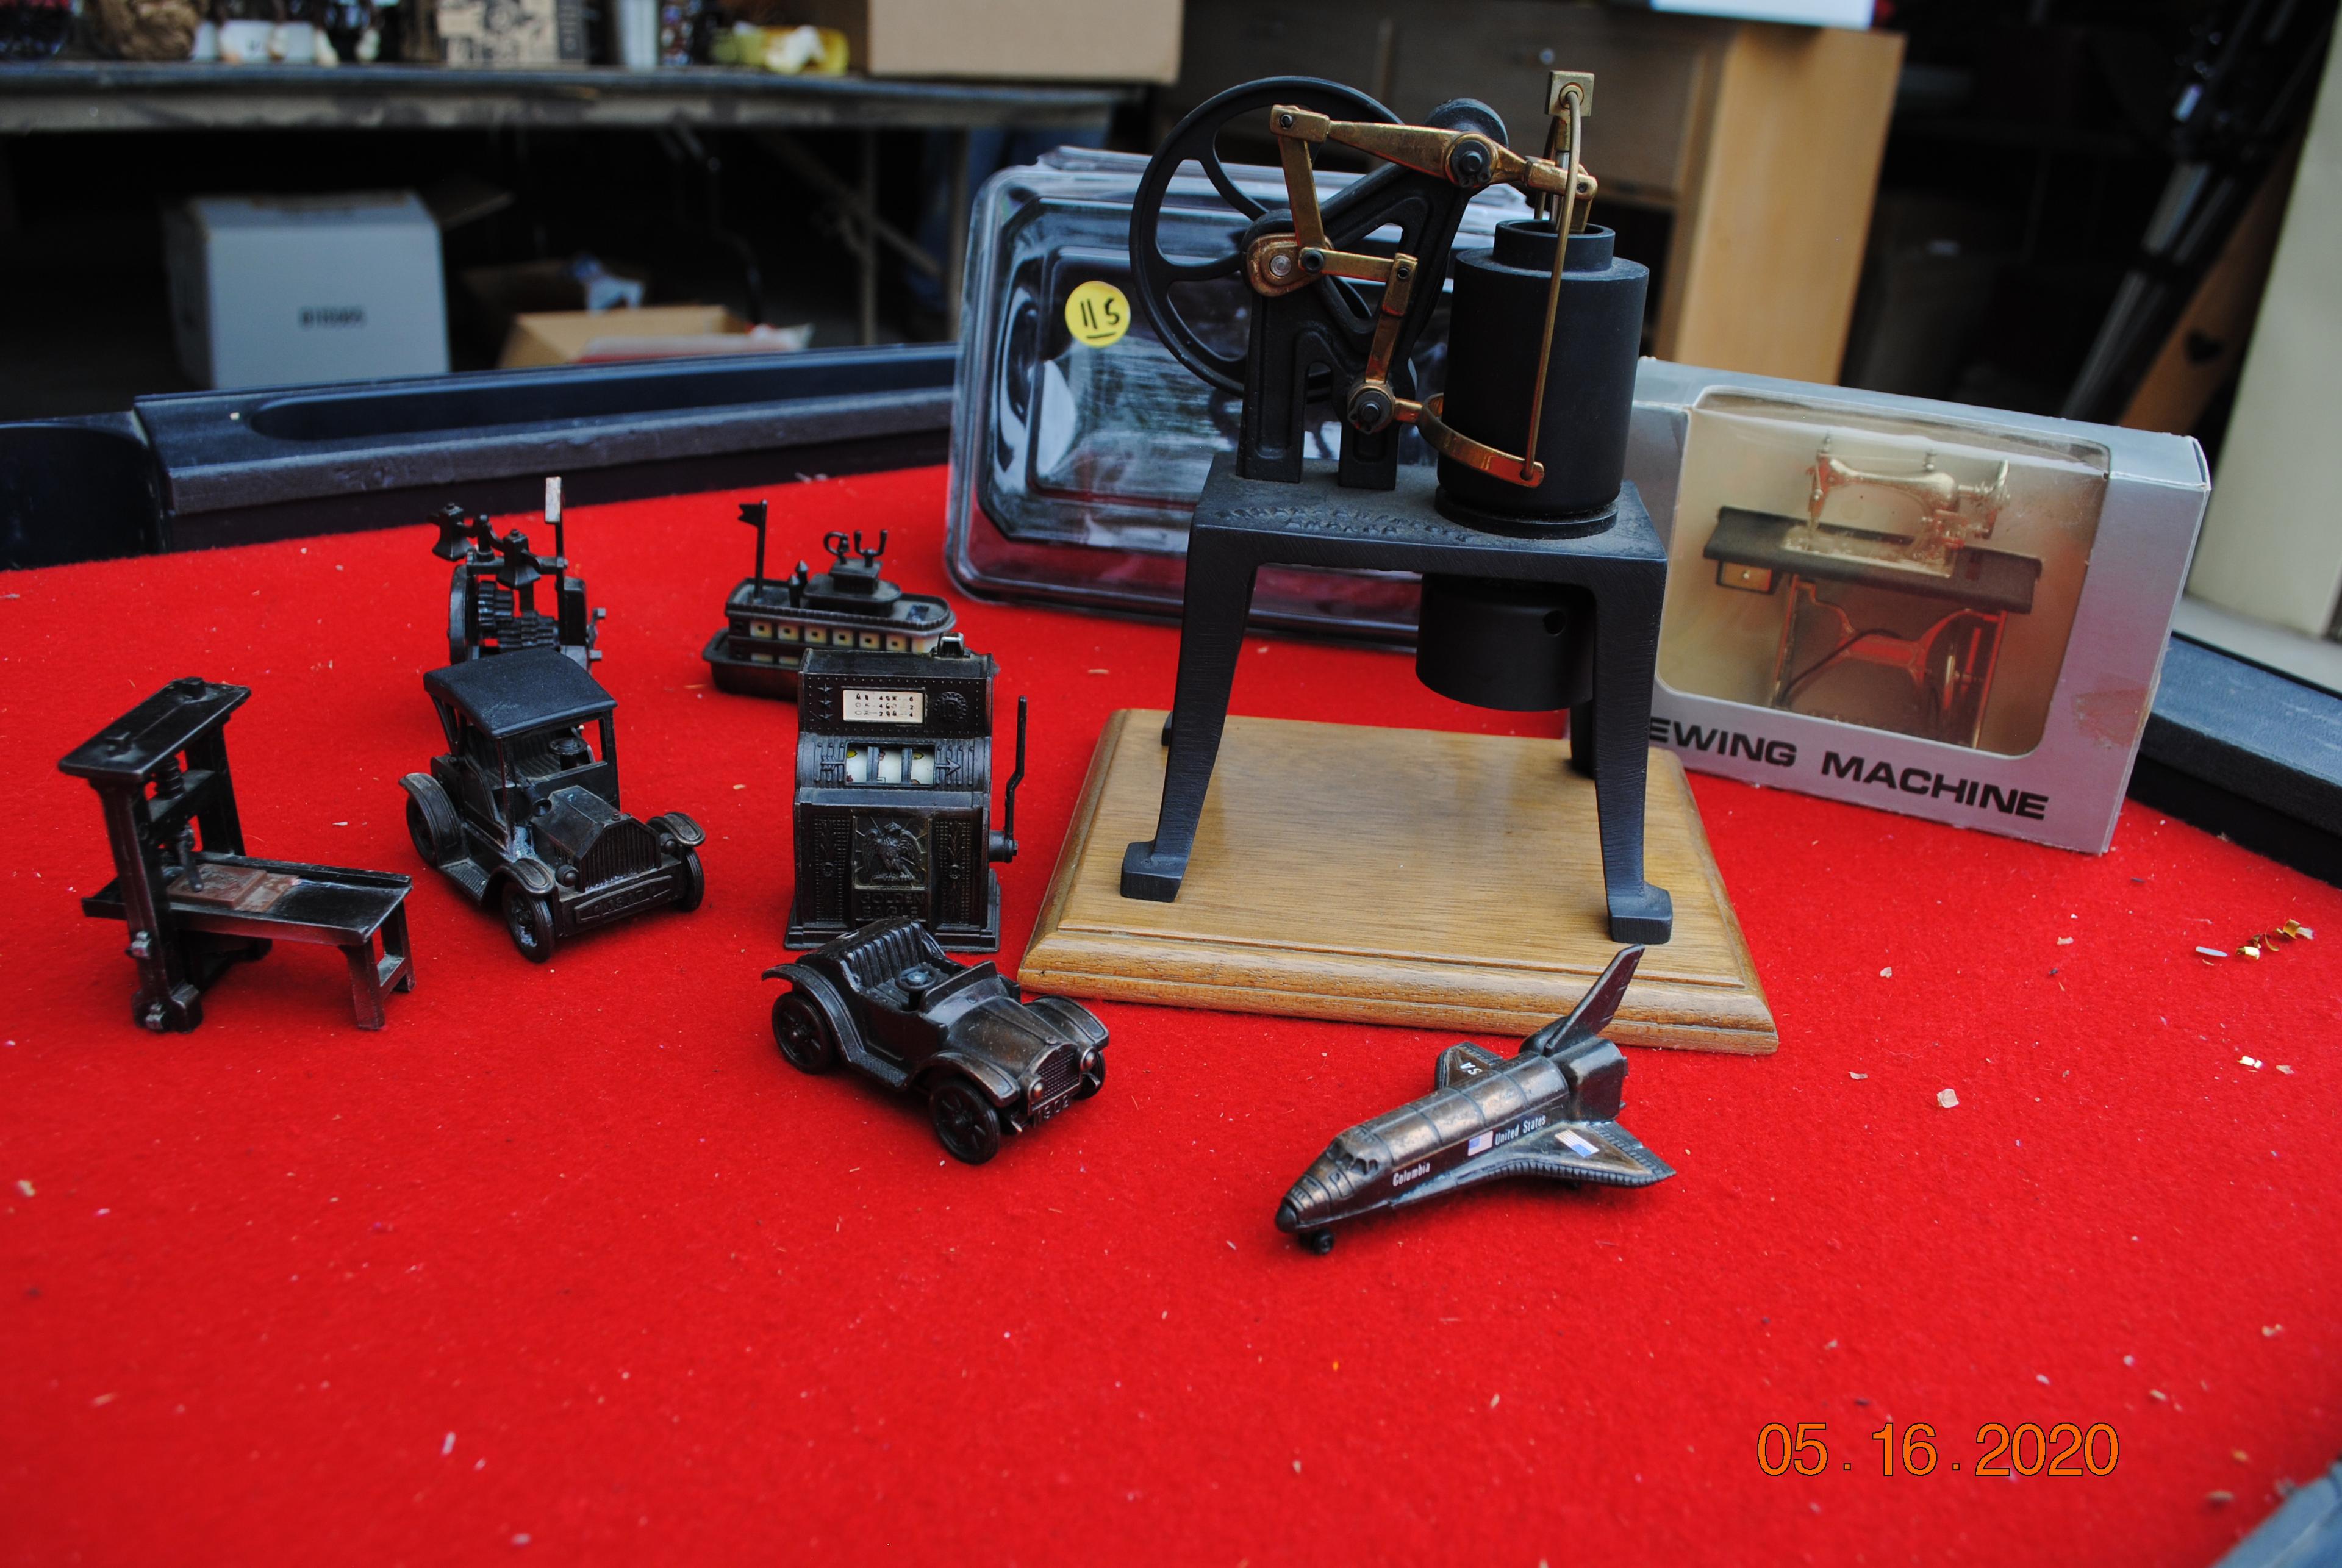 Sewing machine, Ryder Erickson engine, metal toys